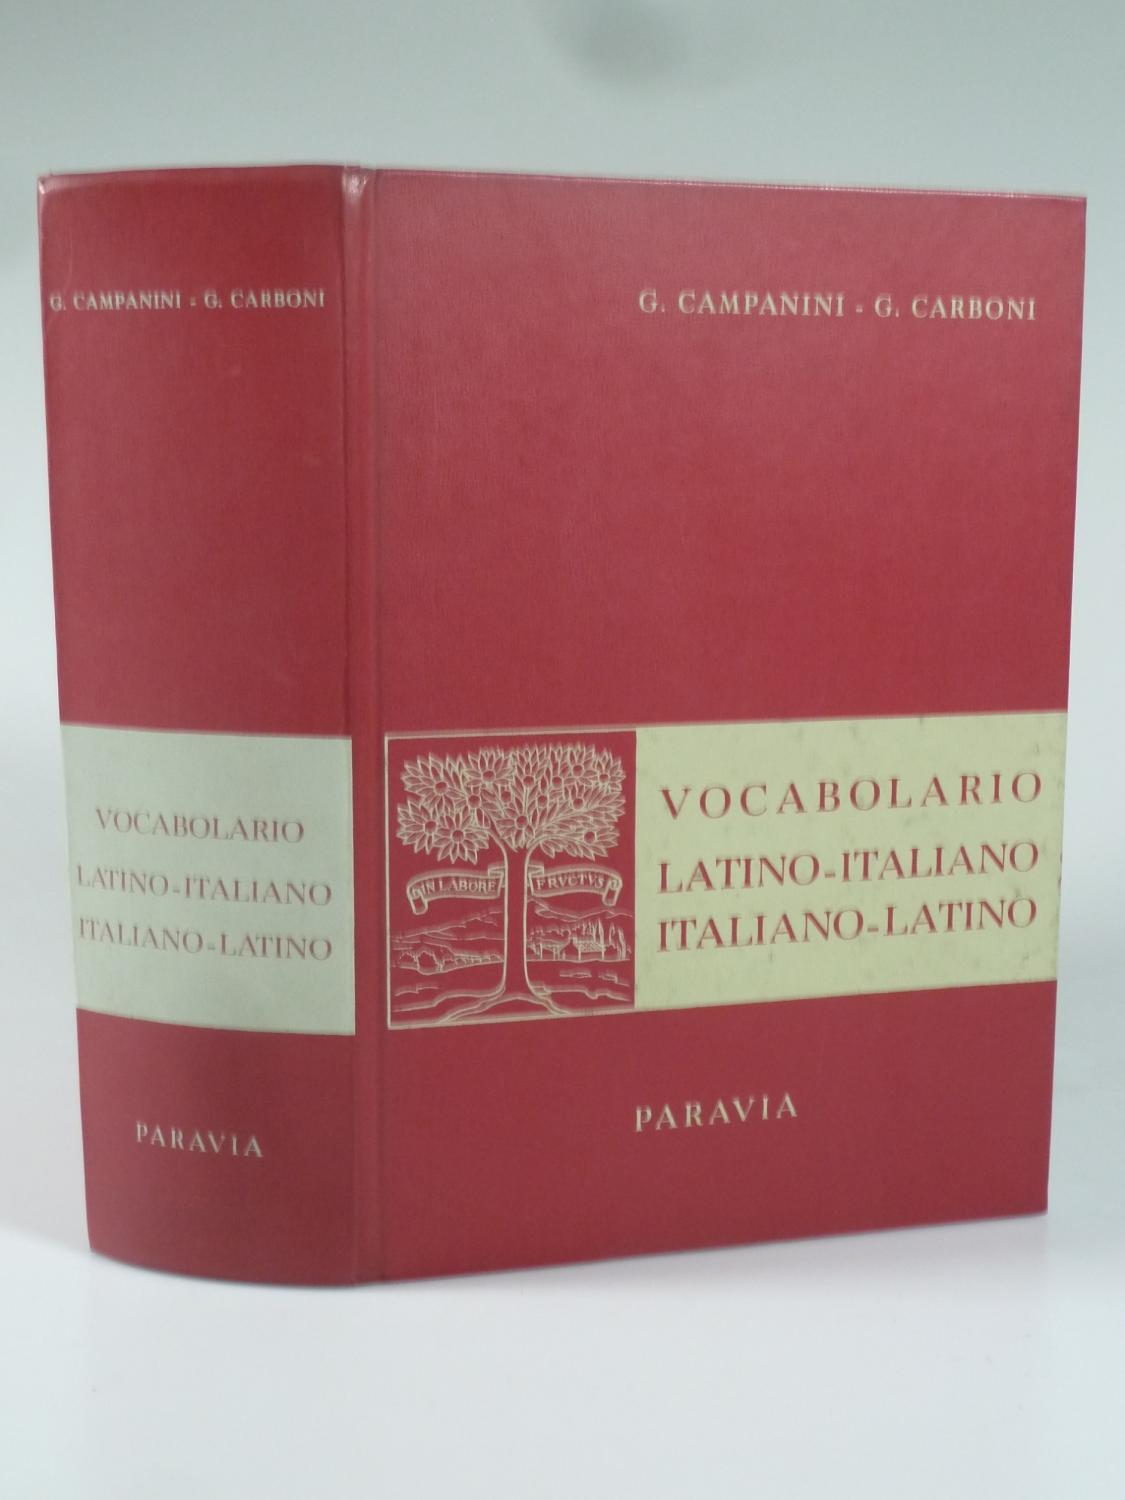 Vocabolario Latino-Italiano, Italiano-Latino. da CAMPANINI, G. E G.  CARBONI.: (1961)